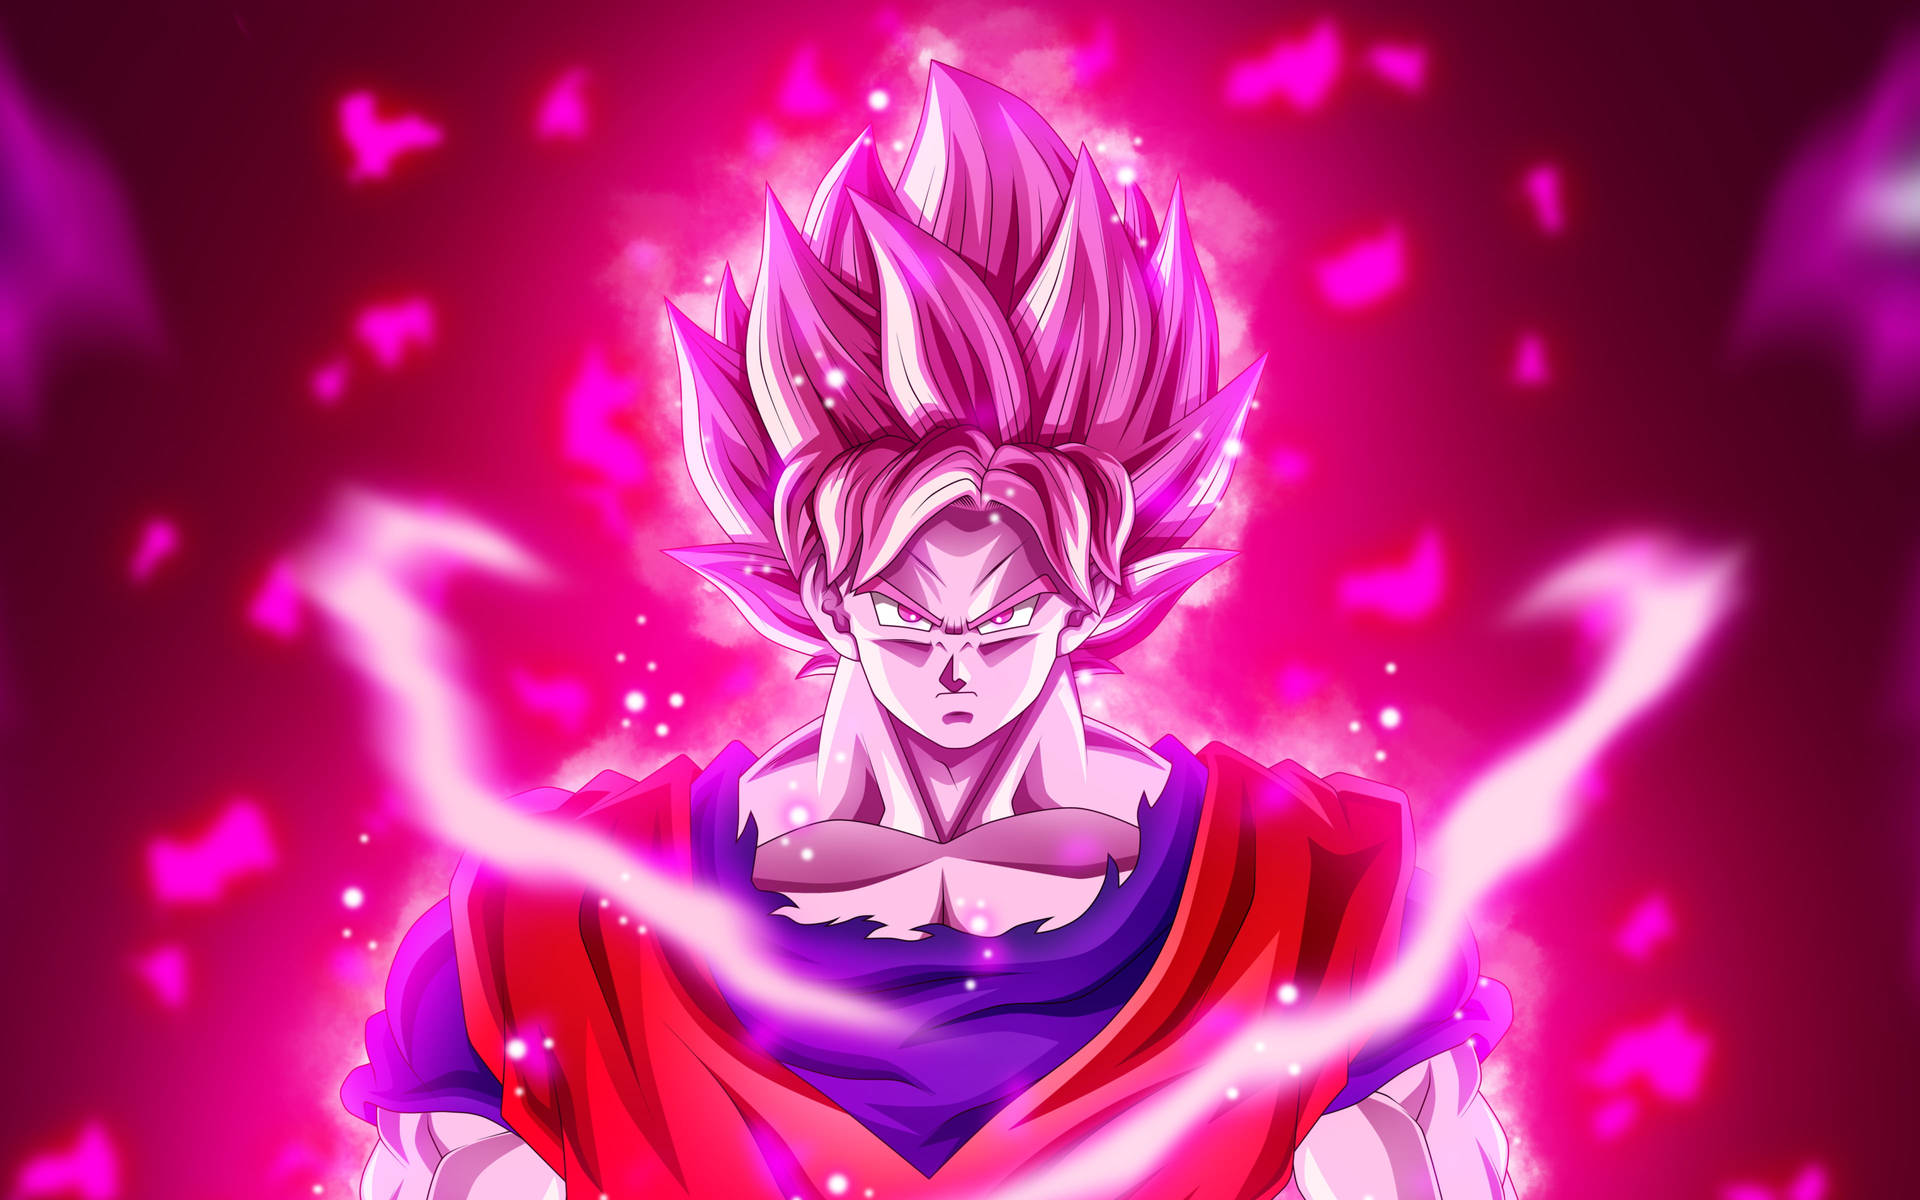 Black Goku Rose 4k Glowing Bright Pink